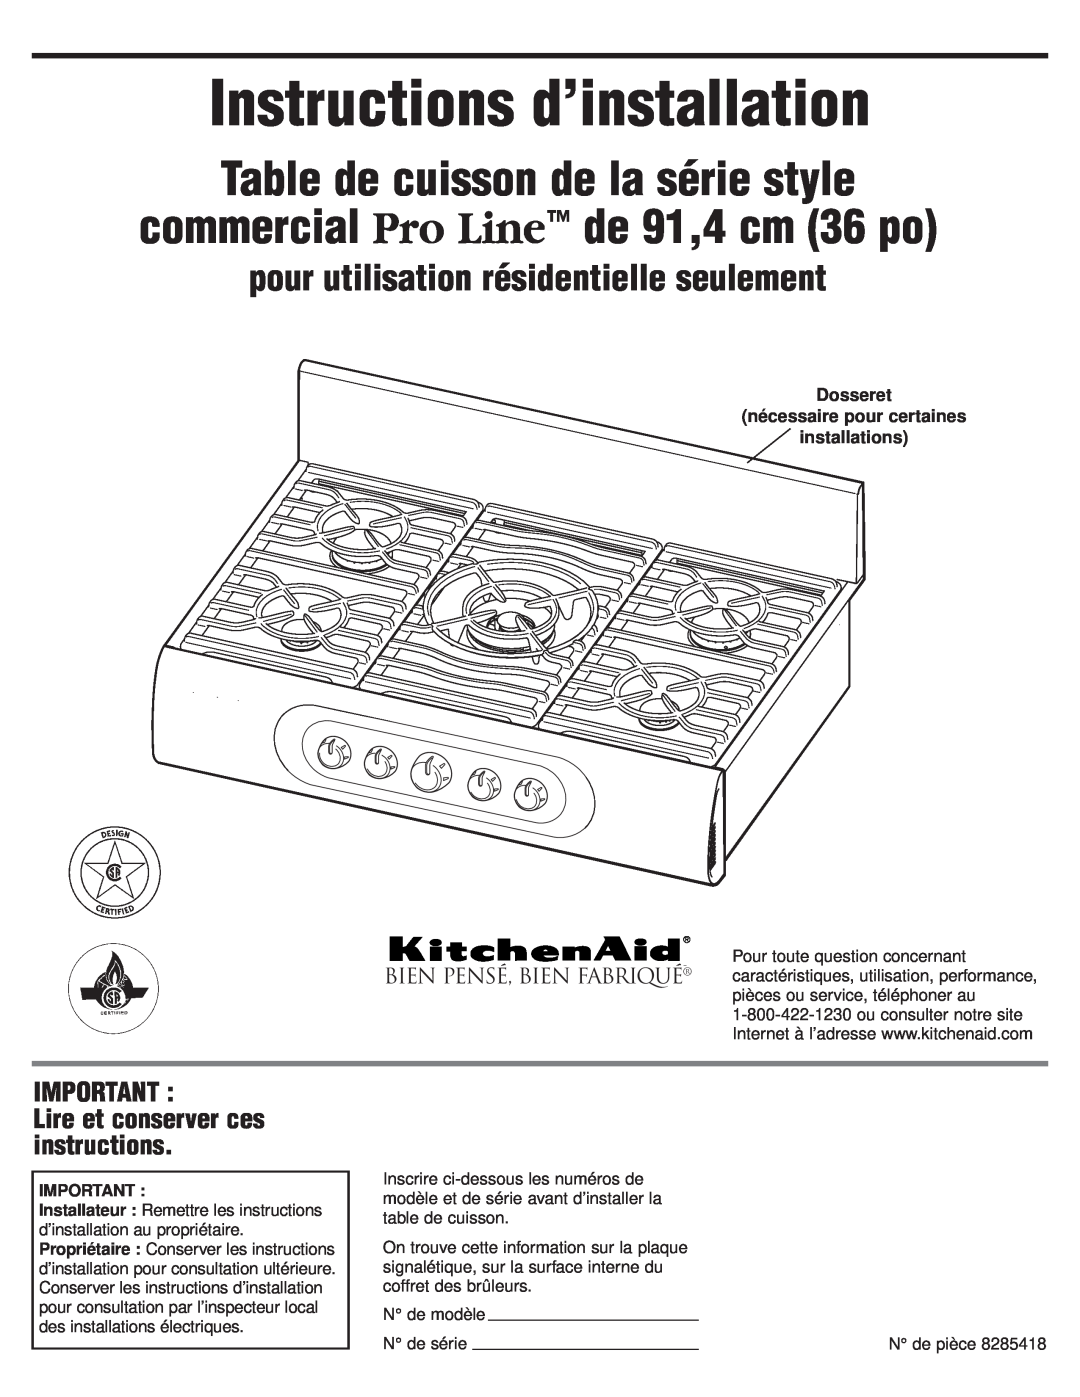 KitchenAid 8285418 Instructions d’installation, Table de cuisson de la série style, commercial Pro Line de 91,4 cm 36 po 